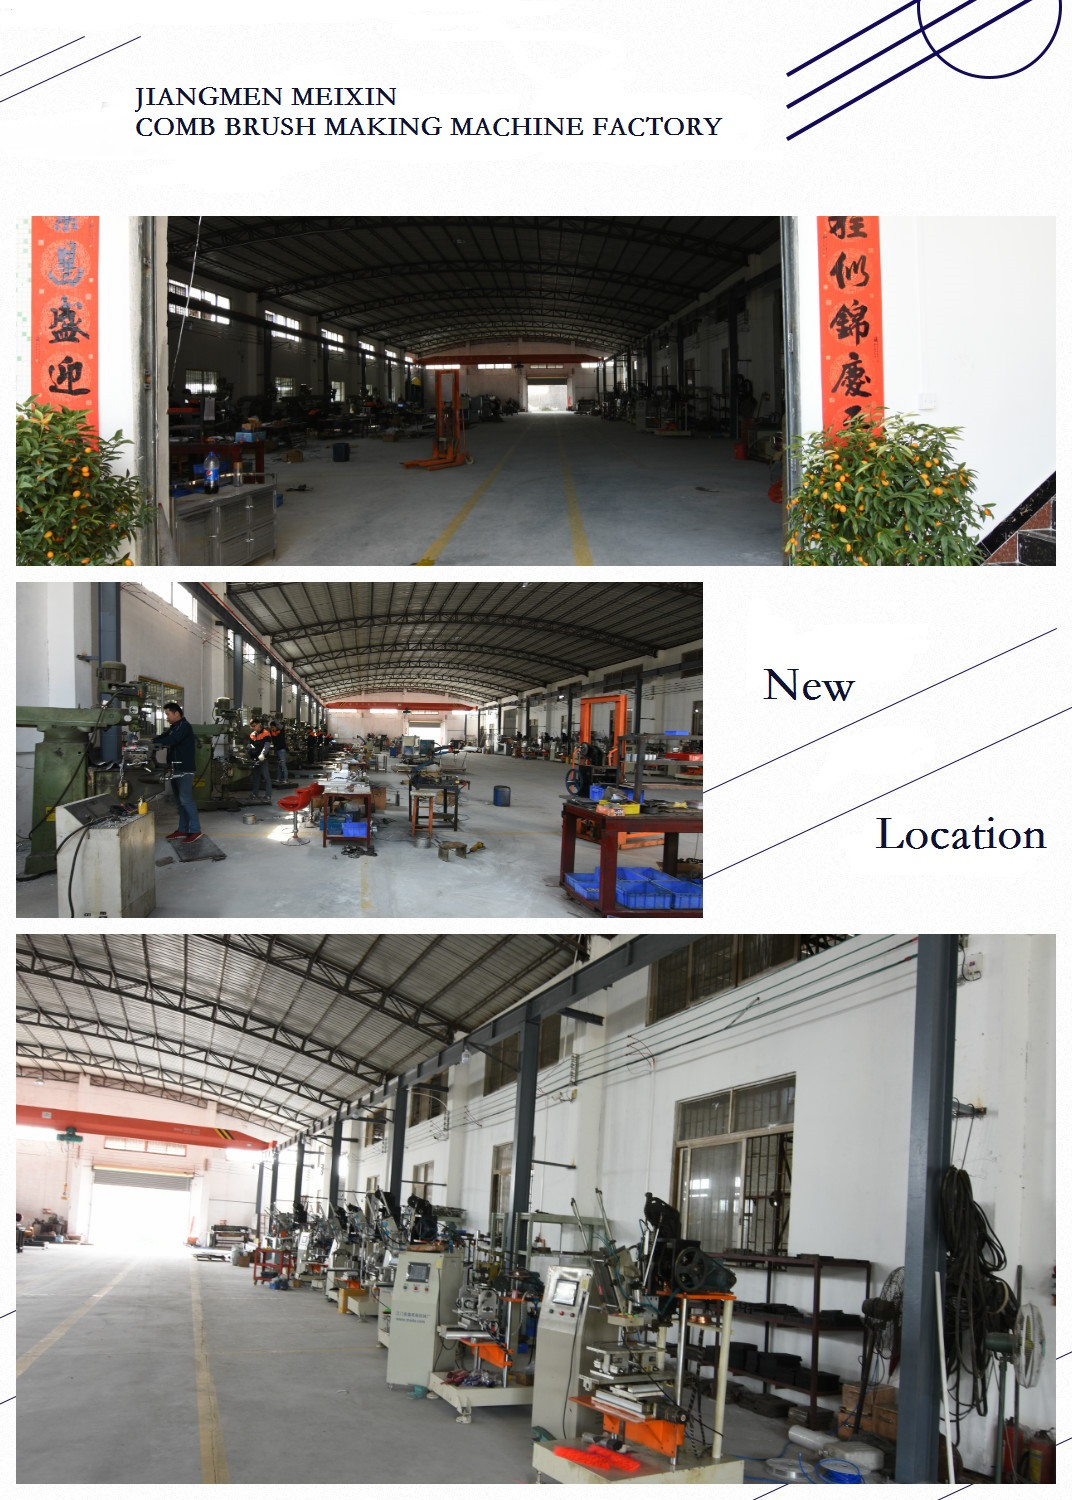 New Location of Jiangmen Meixin Comb Brush Making Machine Factory